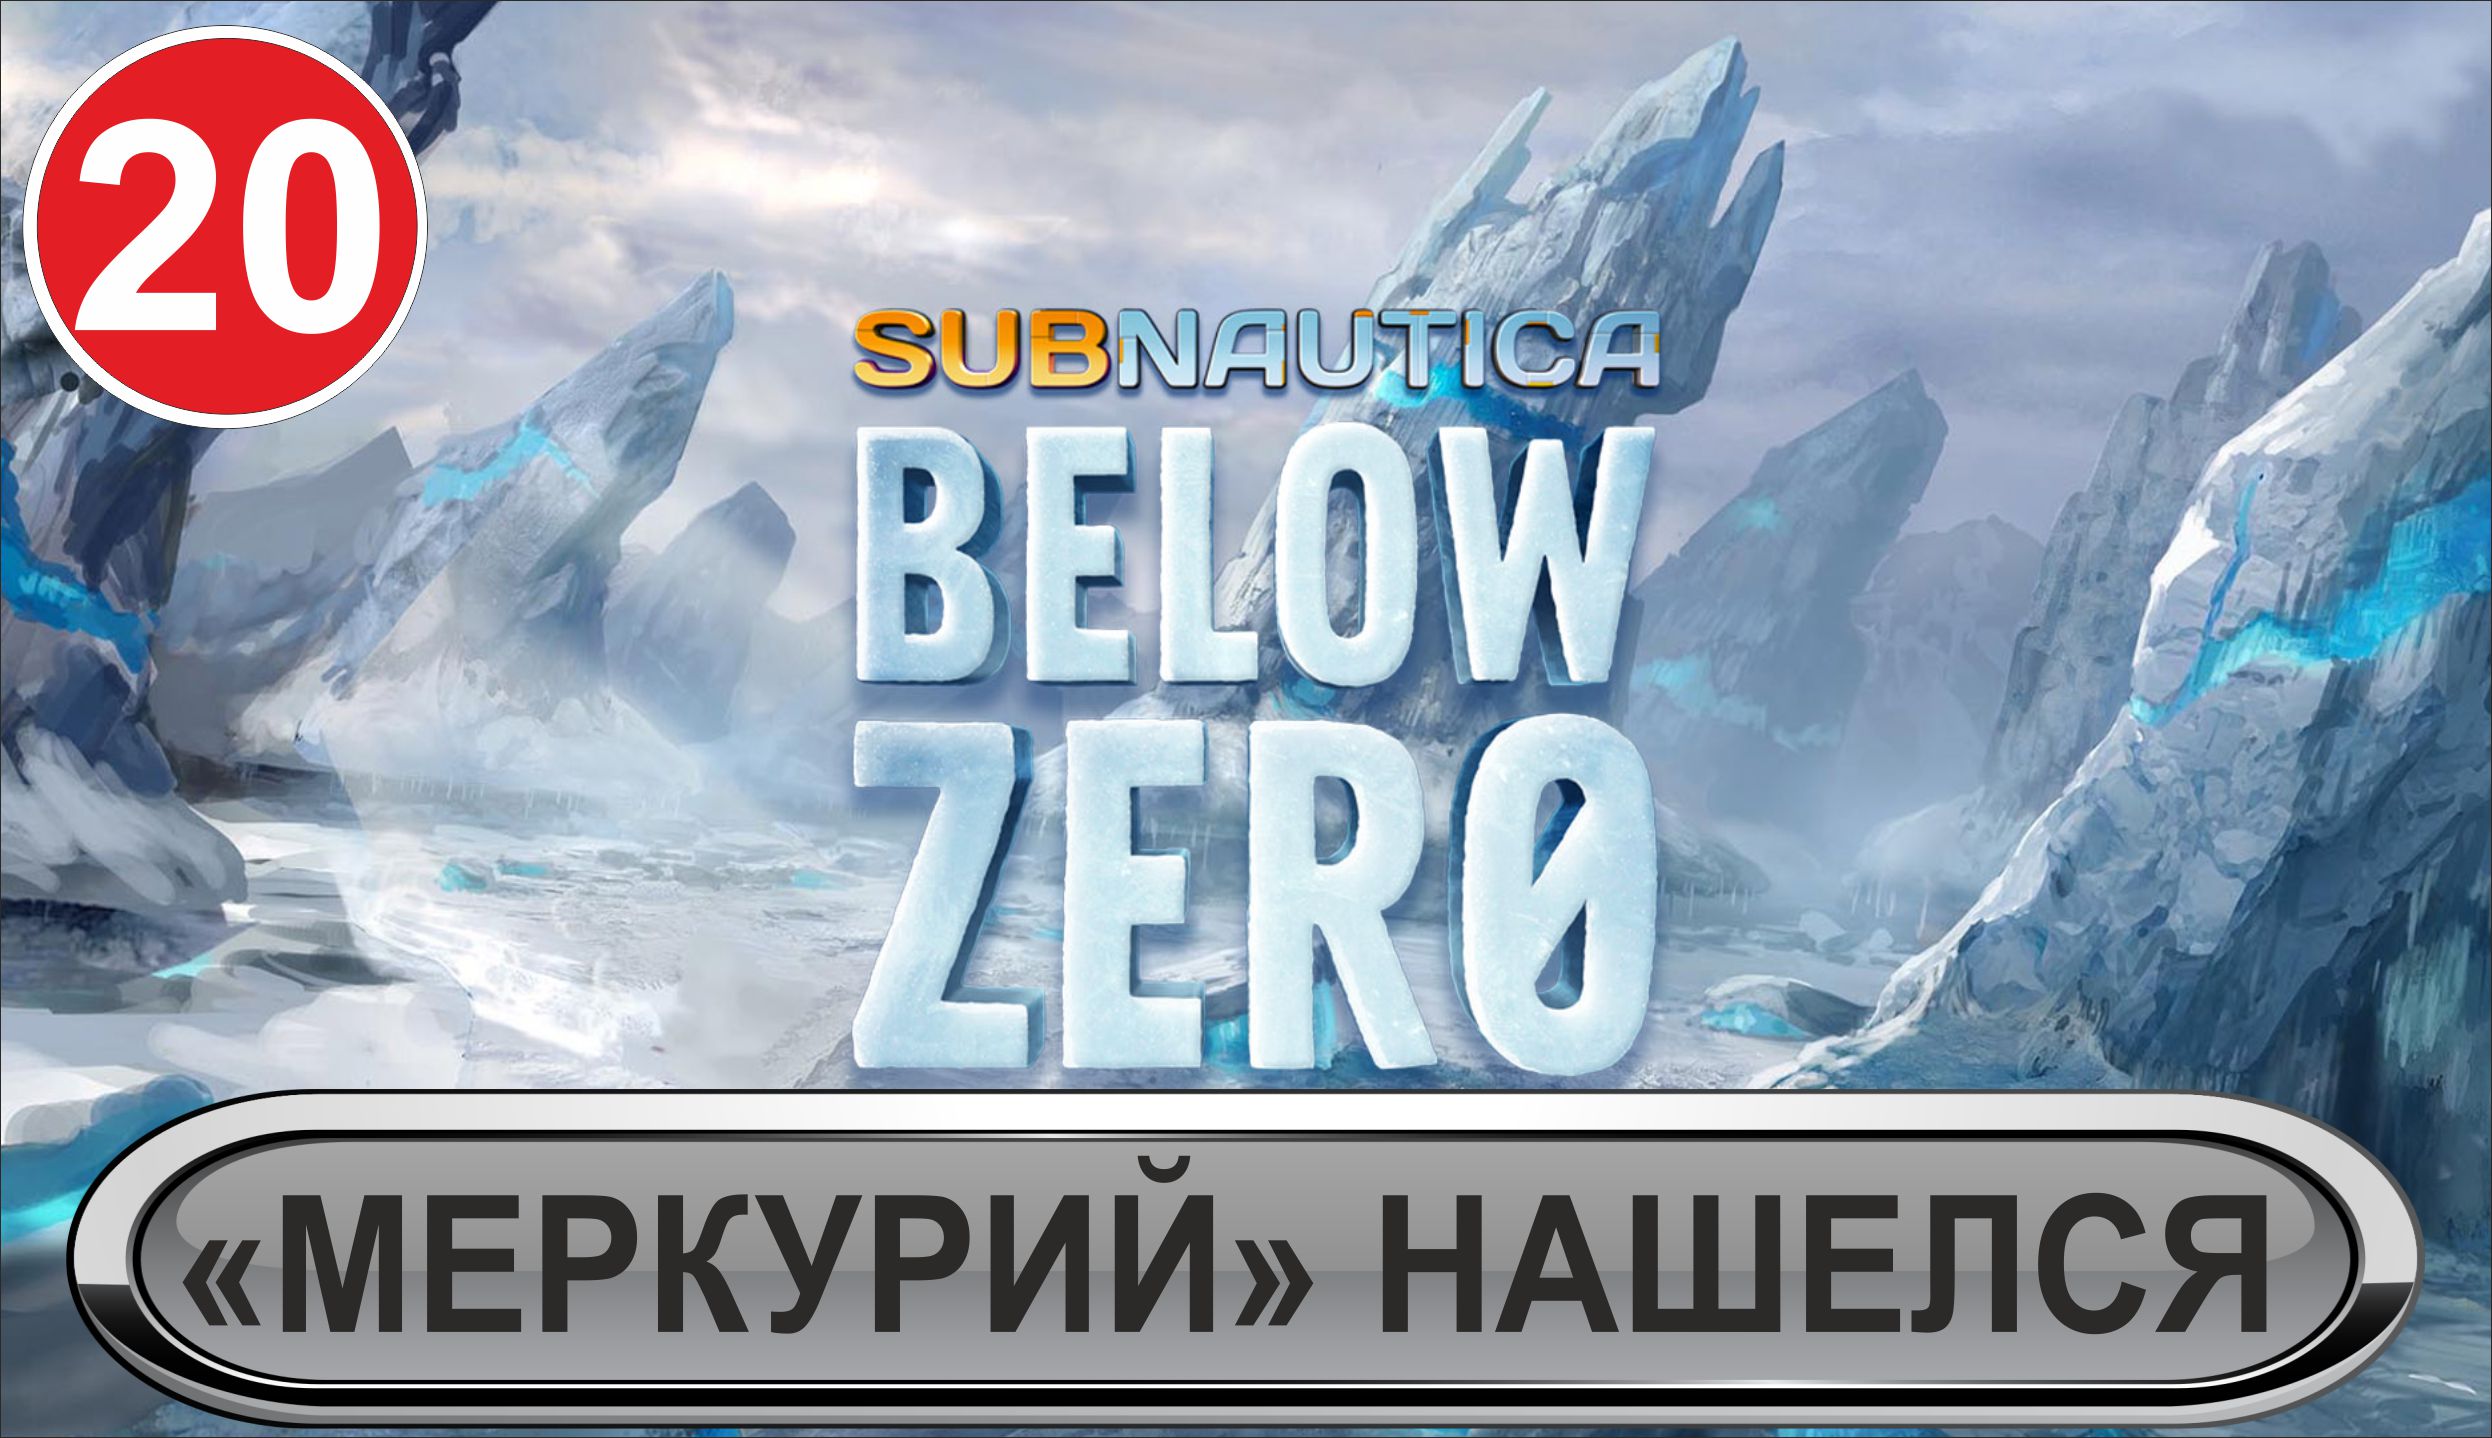 Subnautica: Below Zero - "Меркурий" нашелся